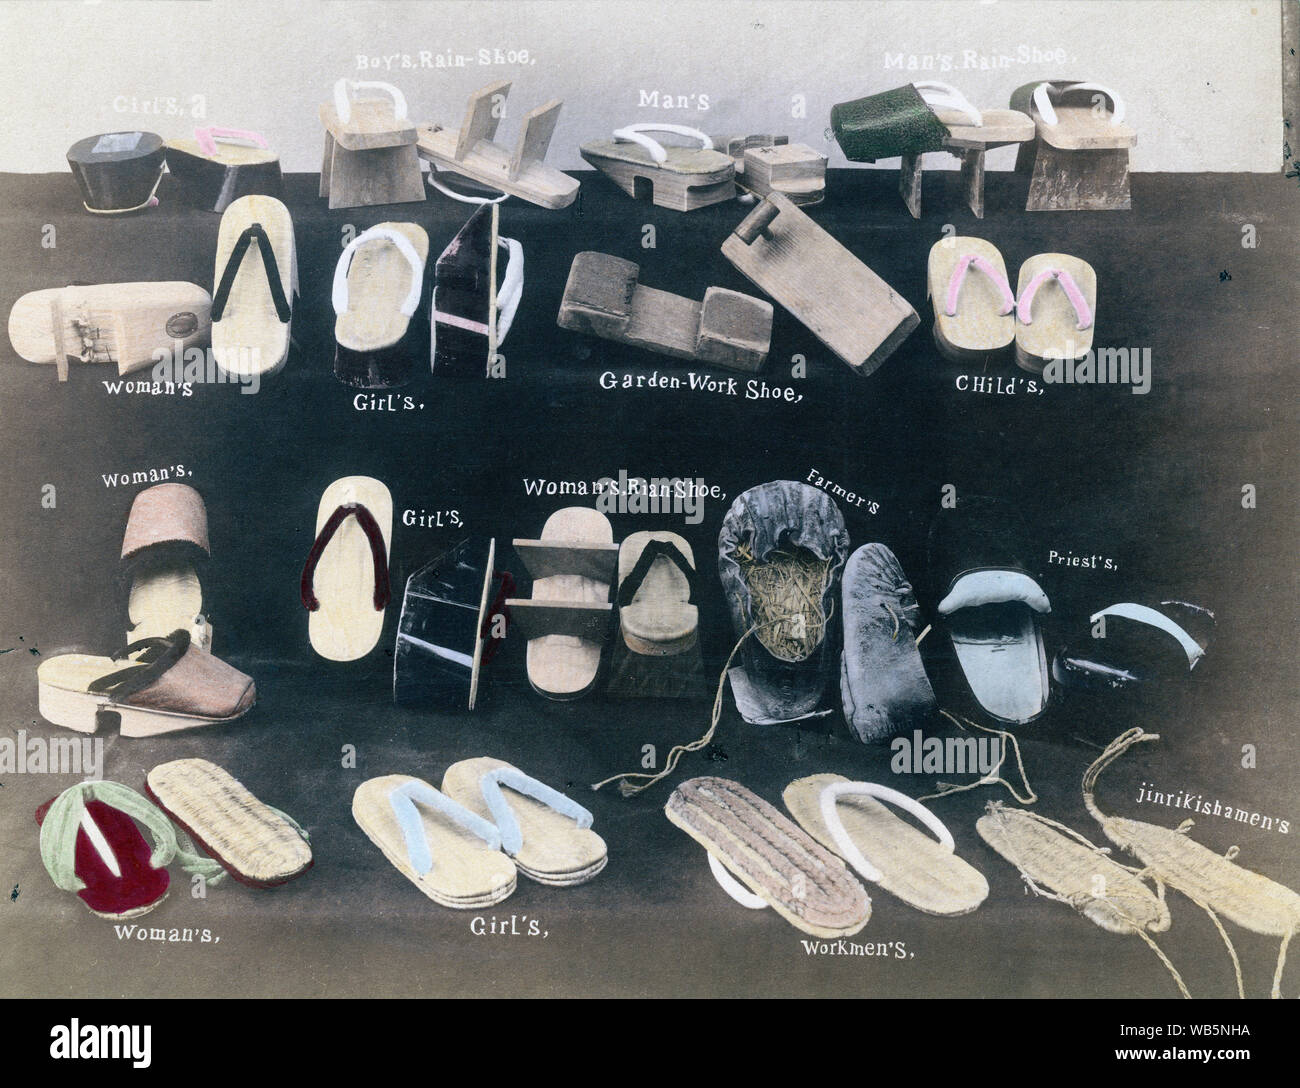 1890 Giappone - tradizionali calzature giapponesi ] - una collezione di  calzature giapponese: geta, waraji e zoccoli per lo Shintoismo sacerdoti.  Geta sono di solito realizzate di un semilavorato di legno